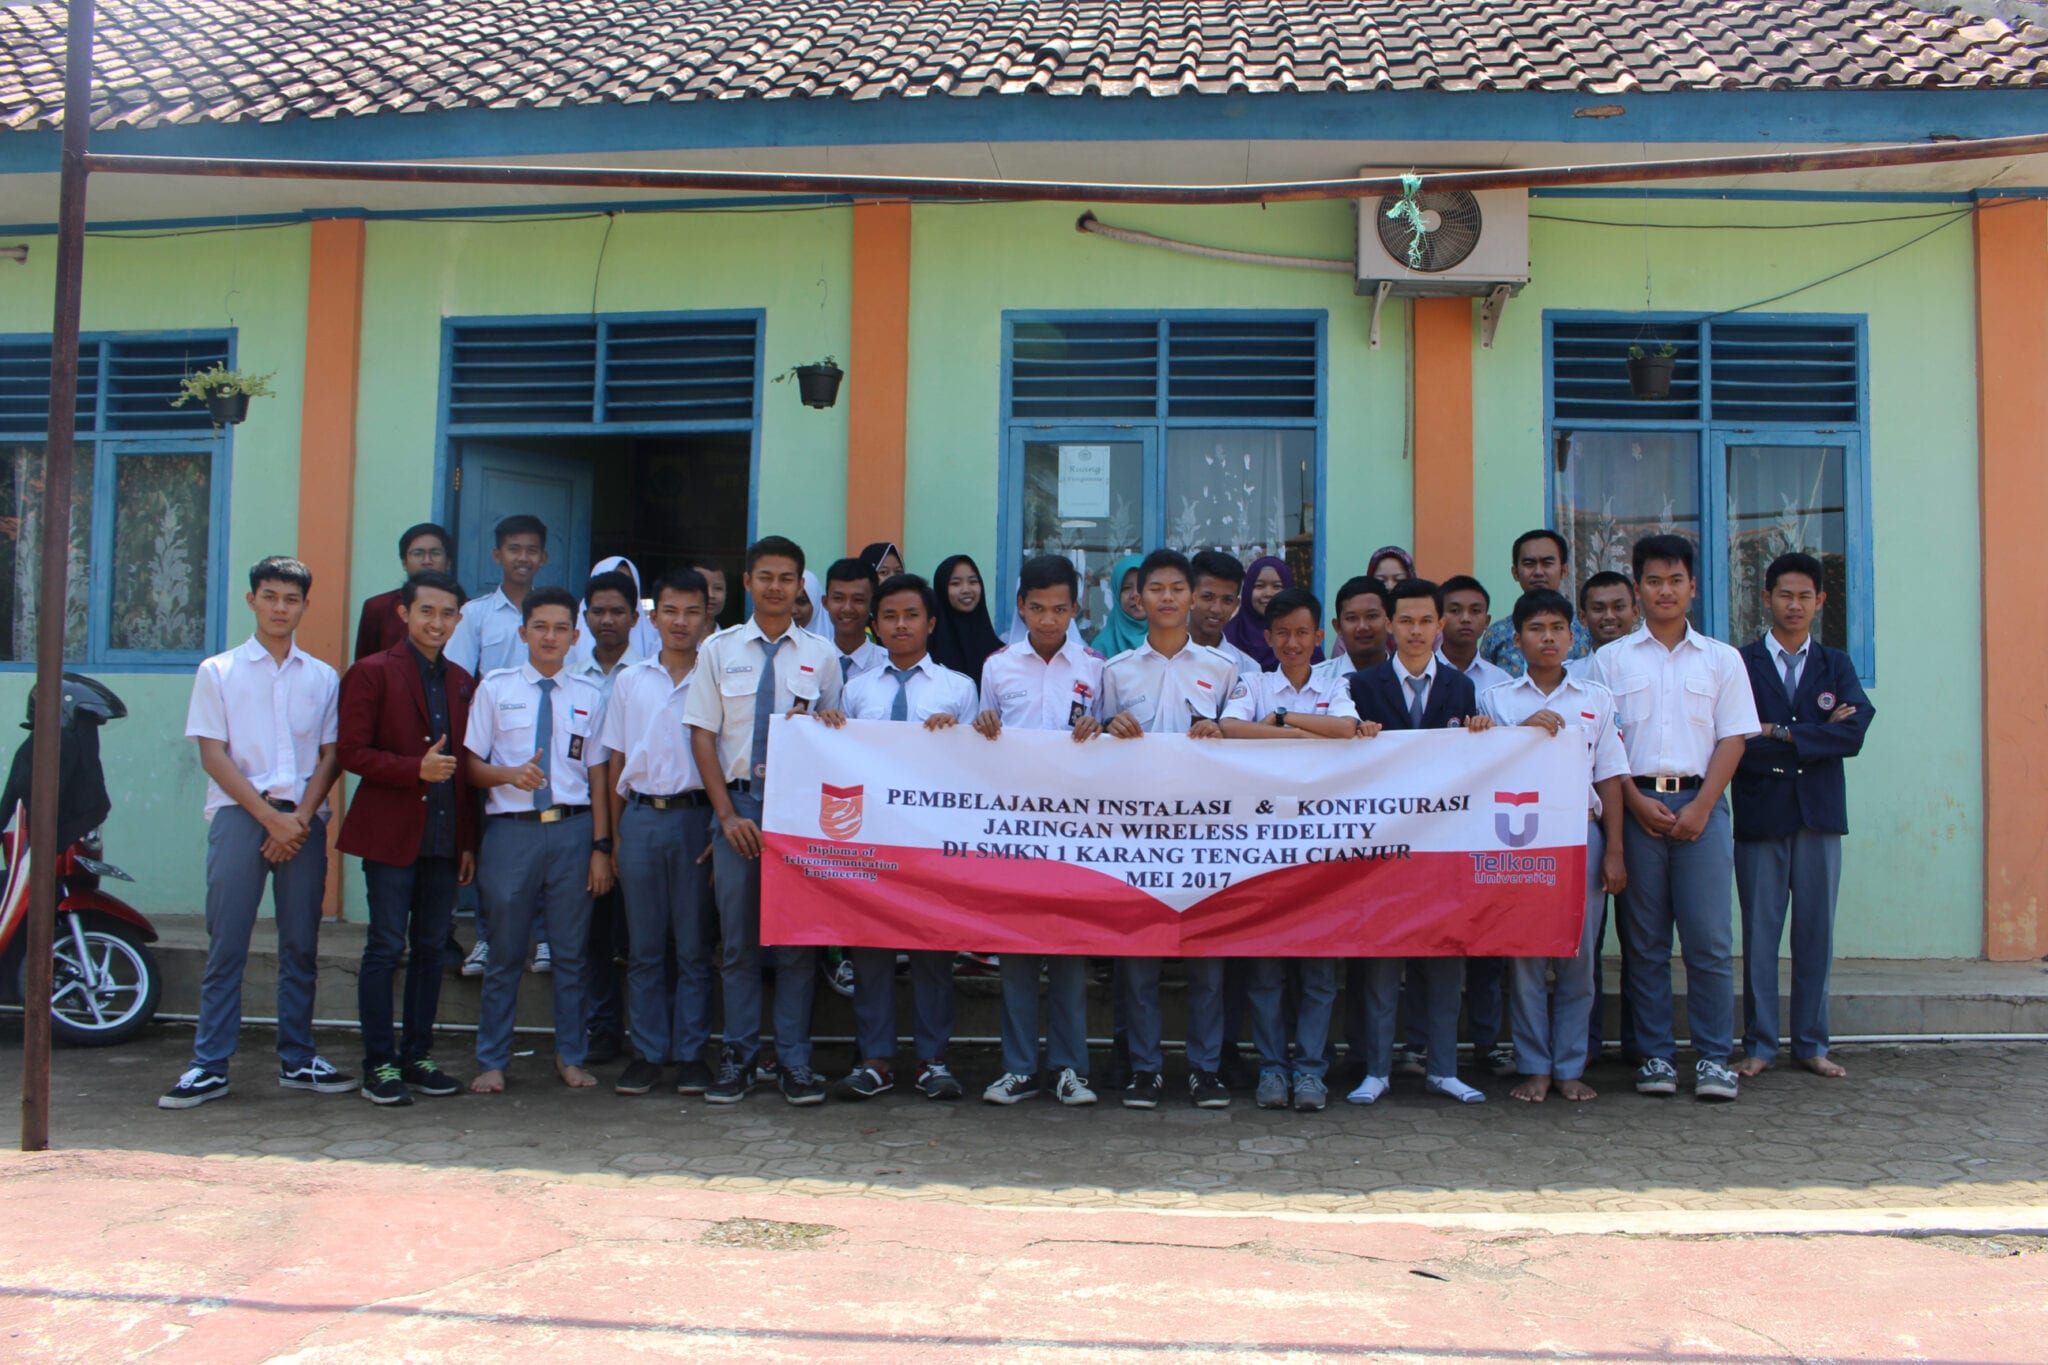 Pembelajaran Instalasi dan Konfgurasi Jaringan  Wireless Fidelity di  SMKN 1 Karang Tengah Cianjur